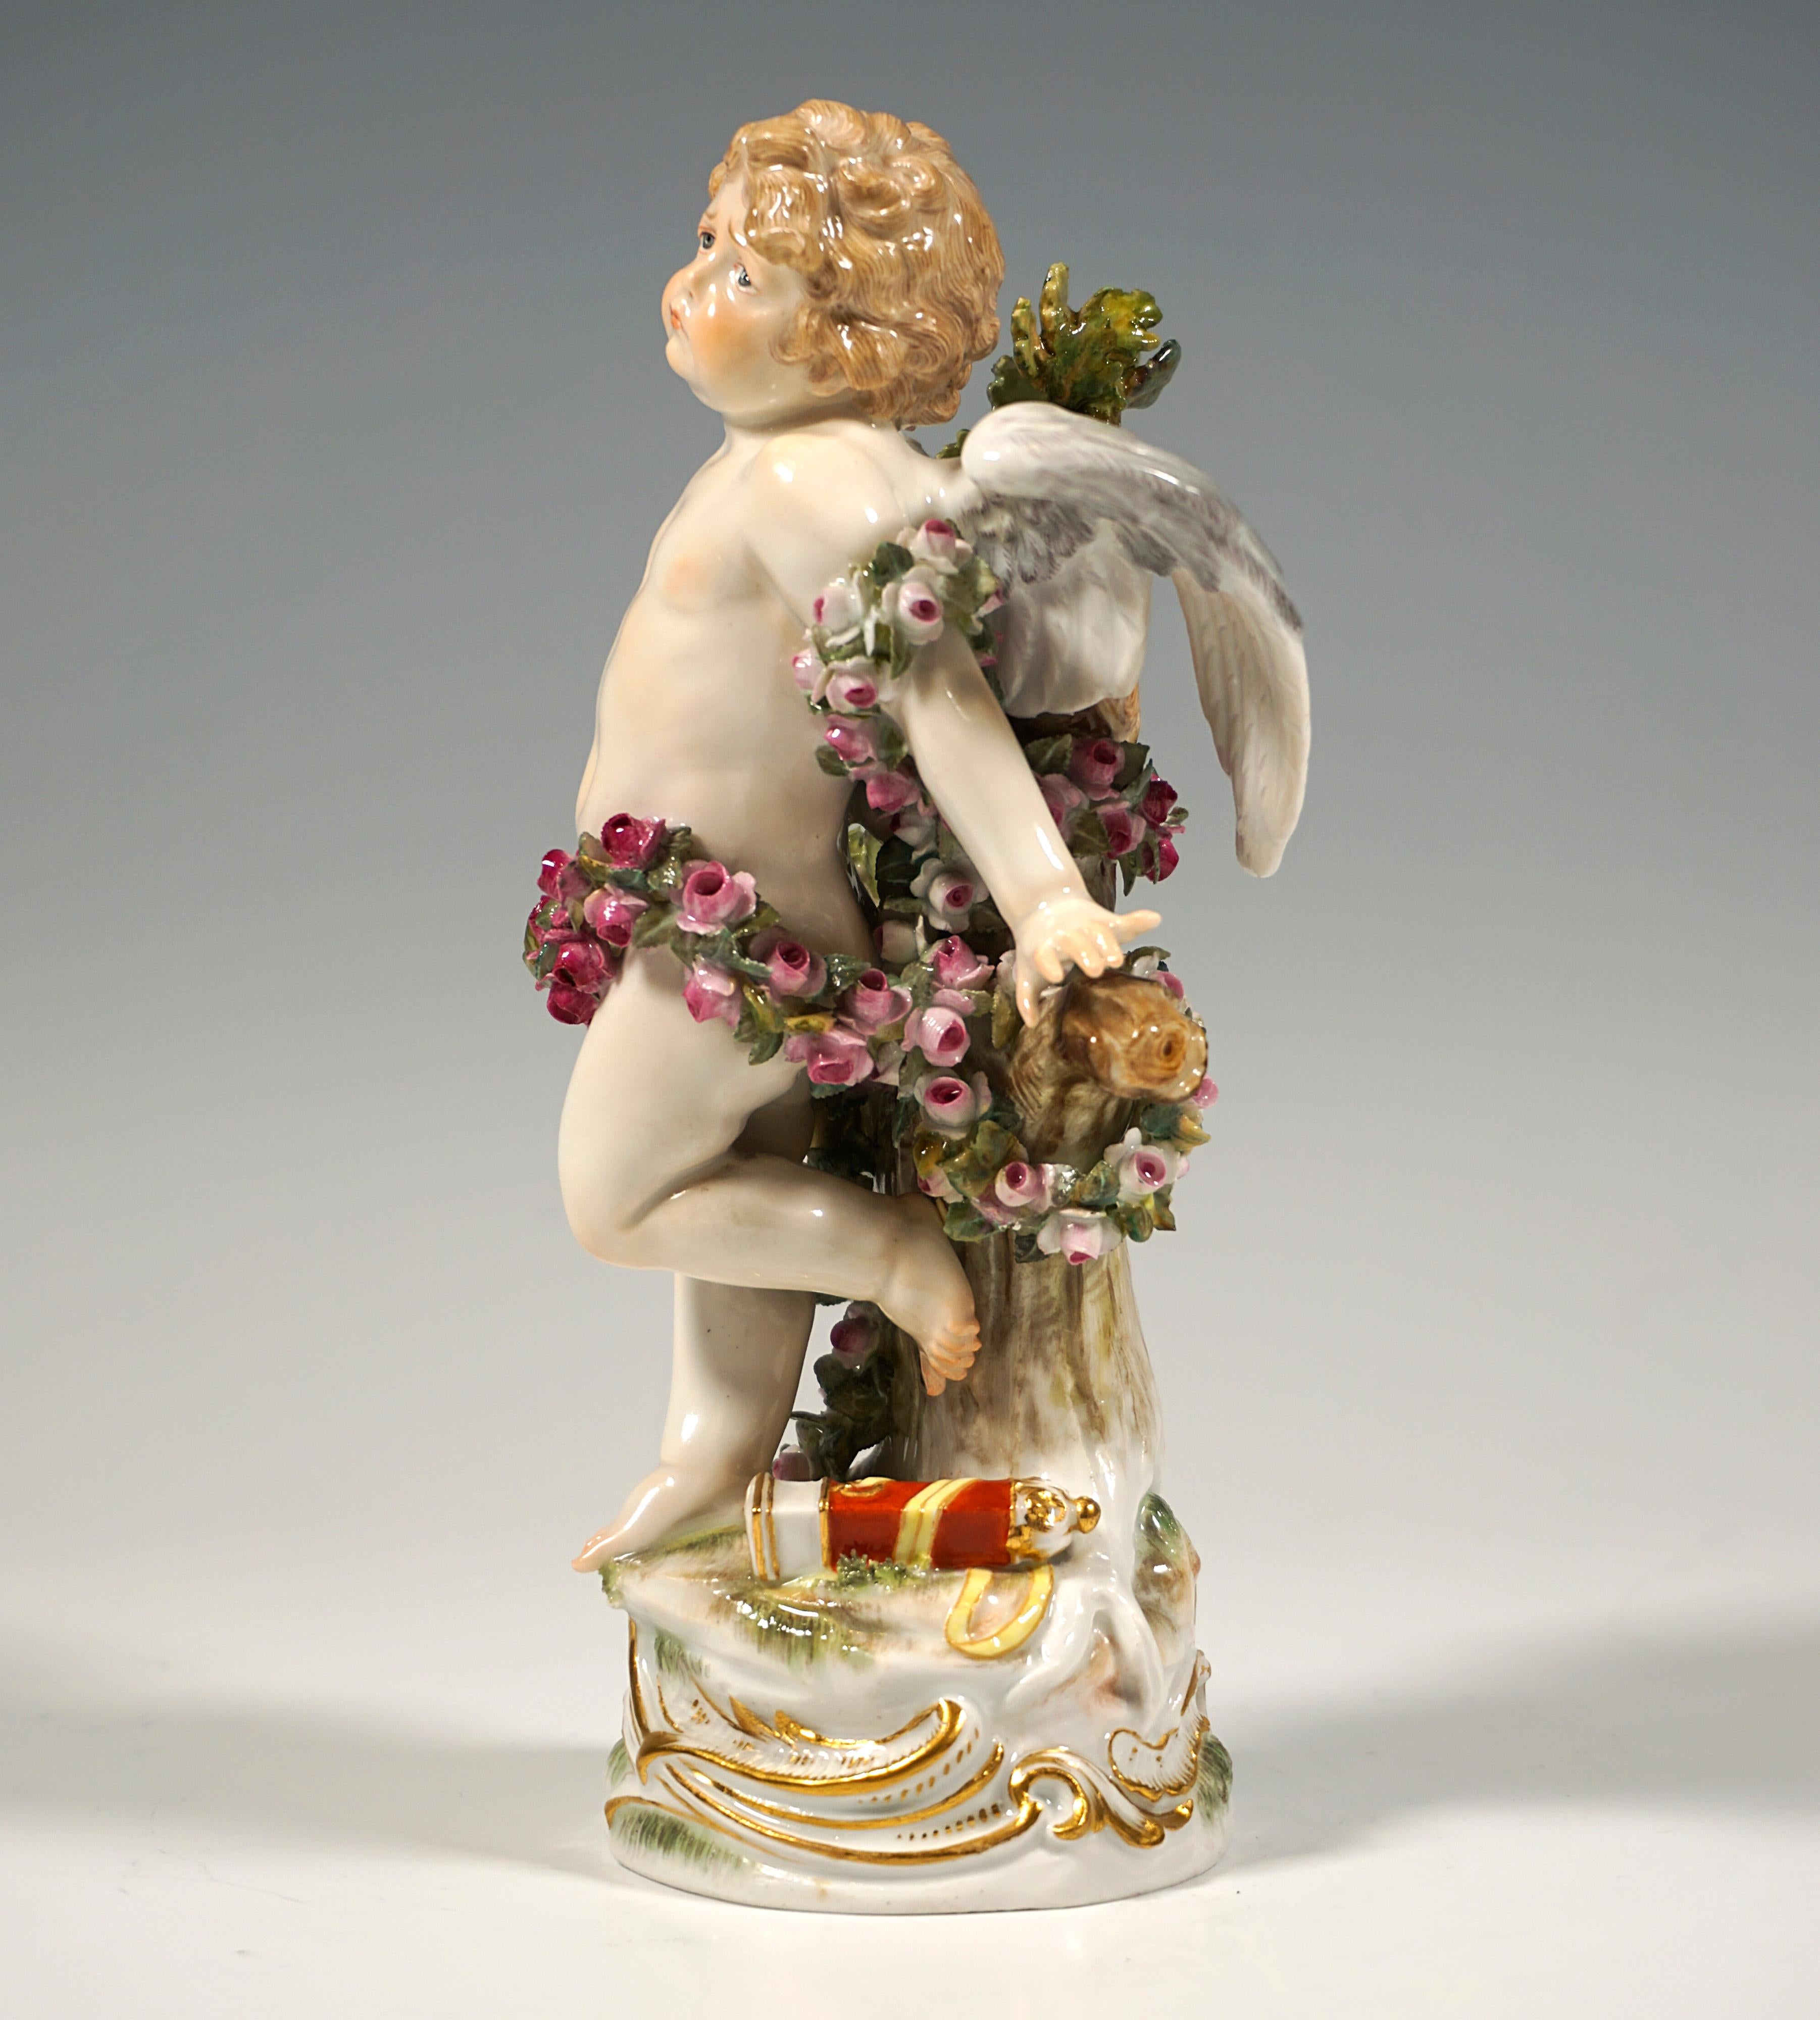 Excellente figurine en porcelaine Art Nouveau de Paul Helmig :
Cupidon ailé à l'expression souffrante attaché à un arbre avec une longue guirlande de roses, un carquois vide à ses pieds.
Sur une haute base ronde naturelle à décor latéral rocaille